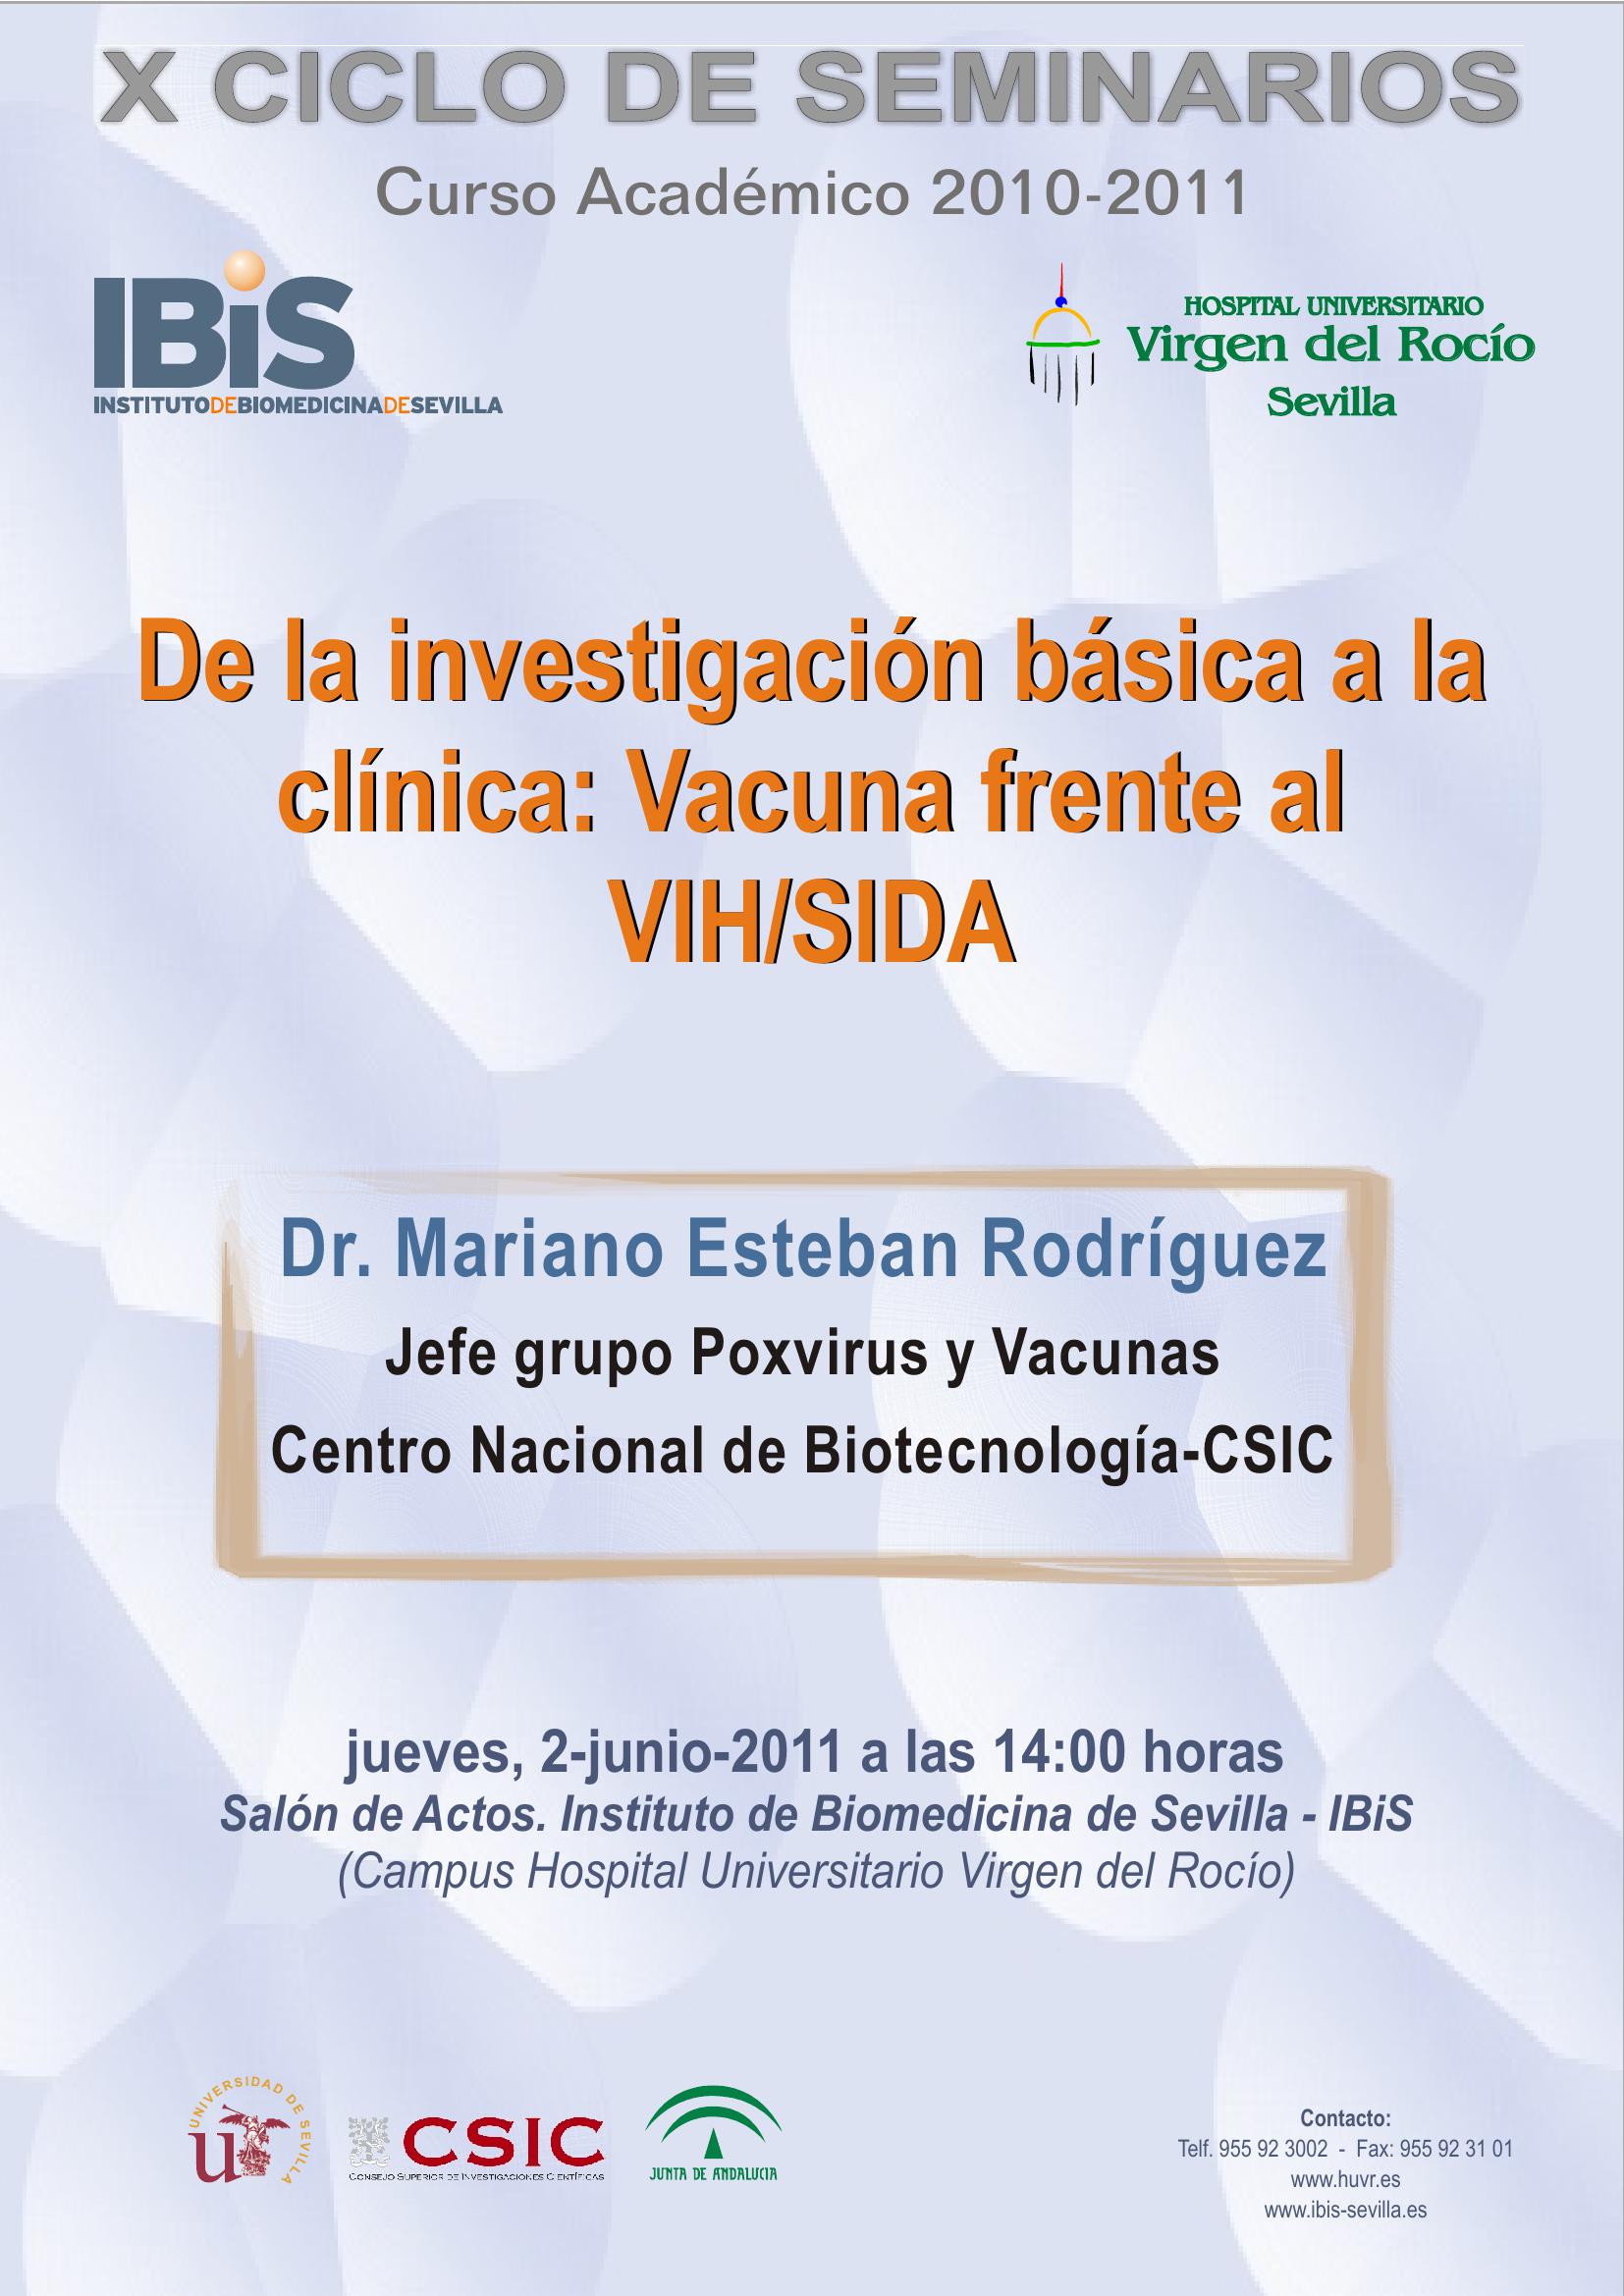 Poster: De la investigación básica a la clínica: Vacuna frente al VIH/SIDA.